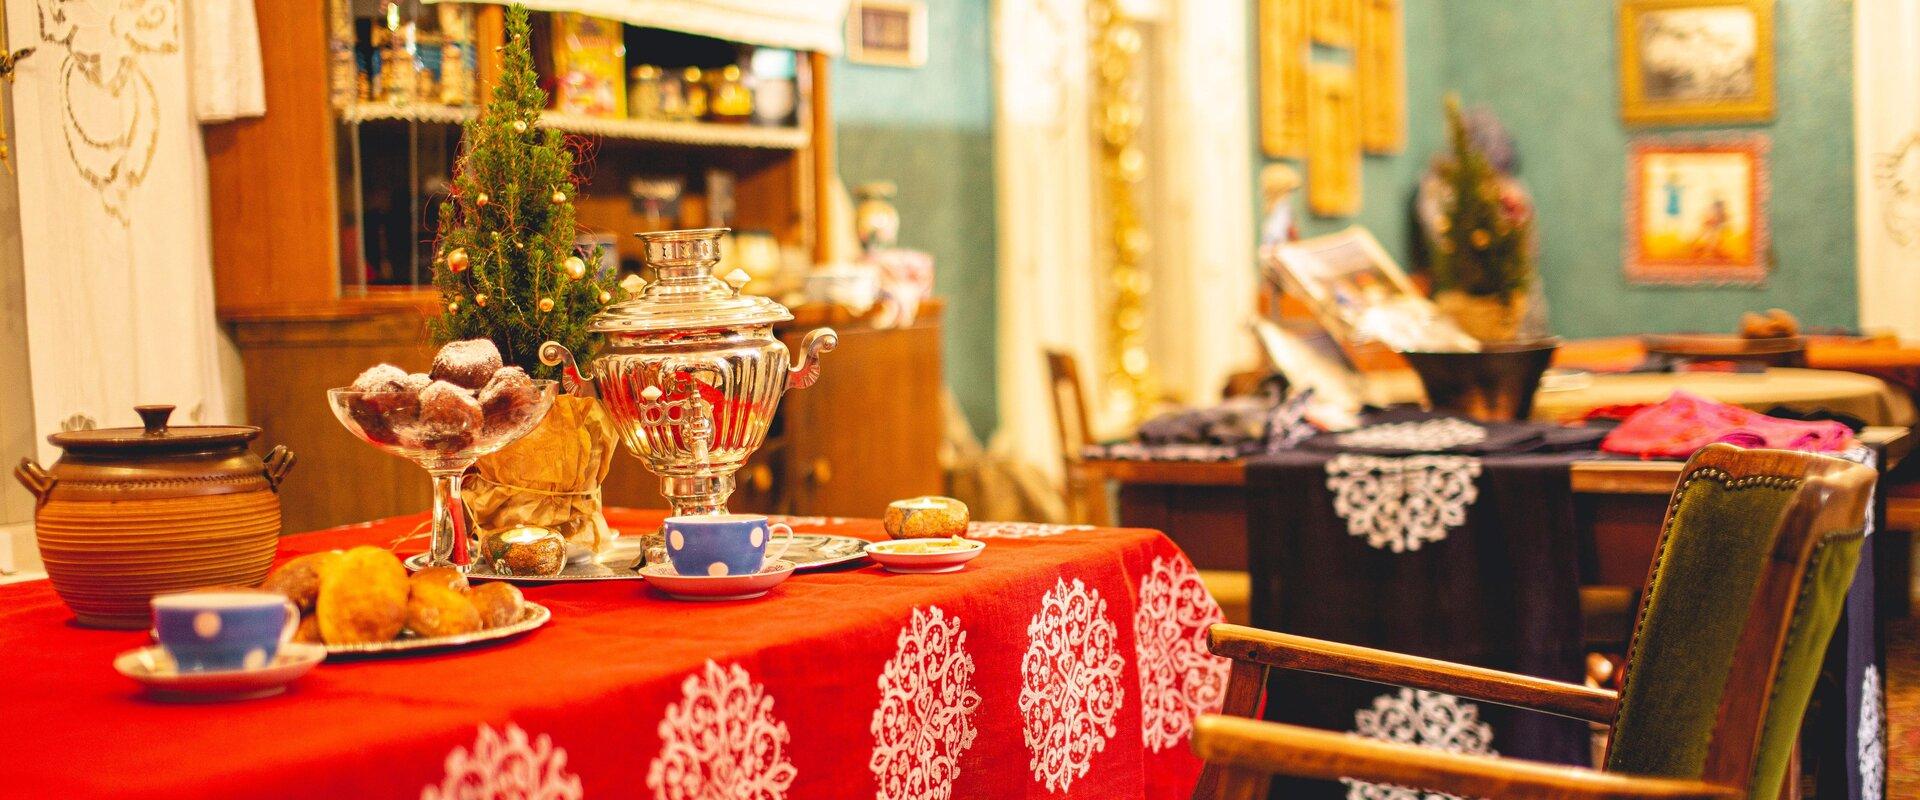 Aunt Šura Café and handicraft shop